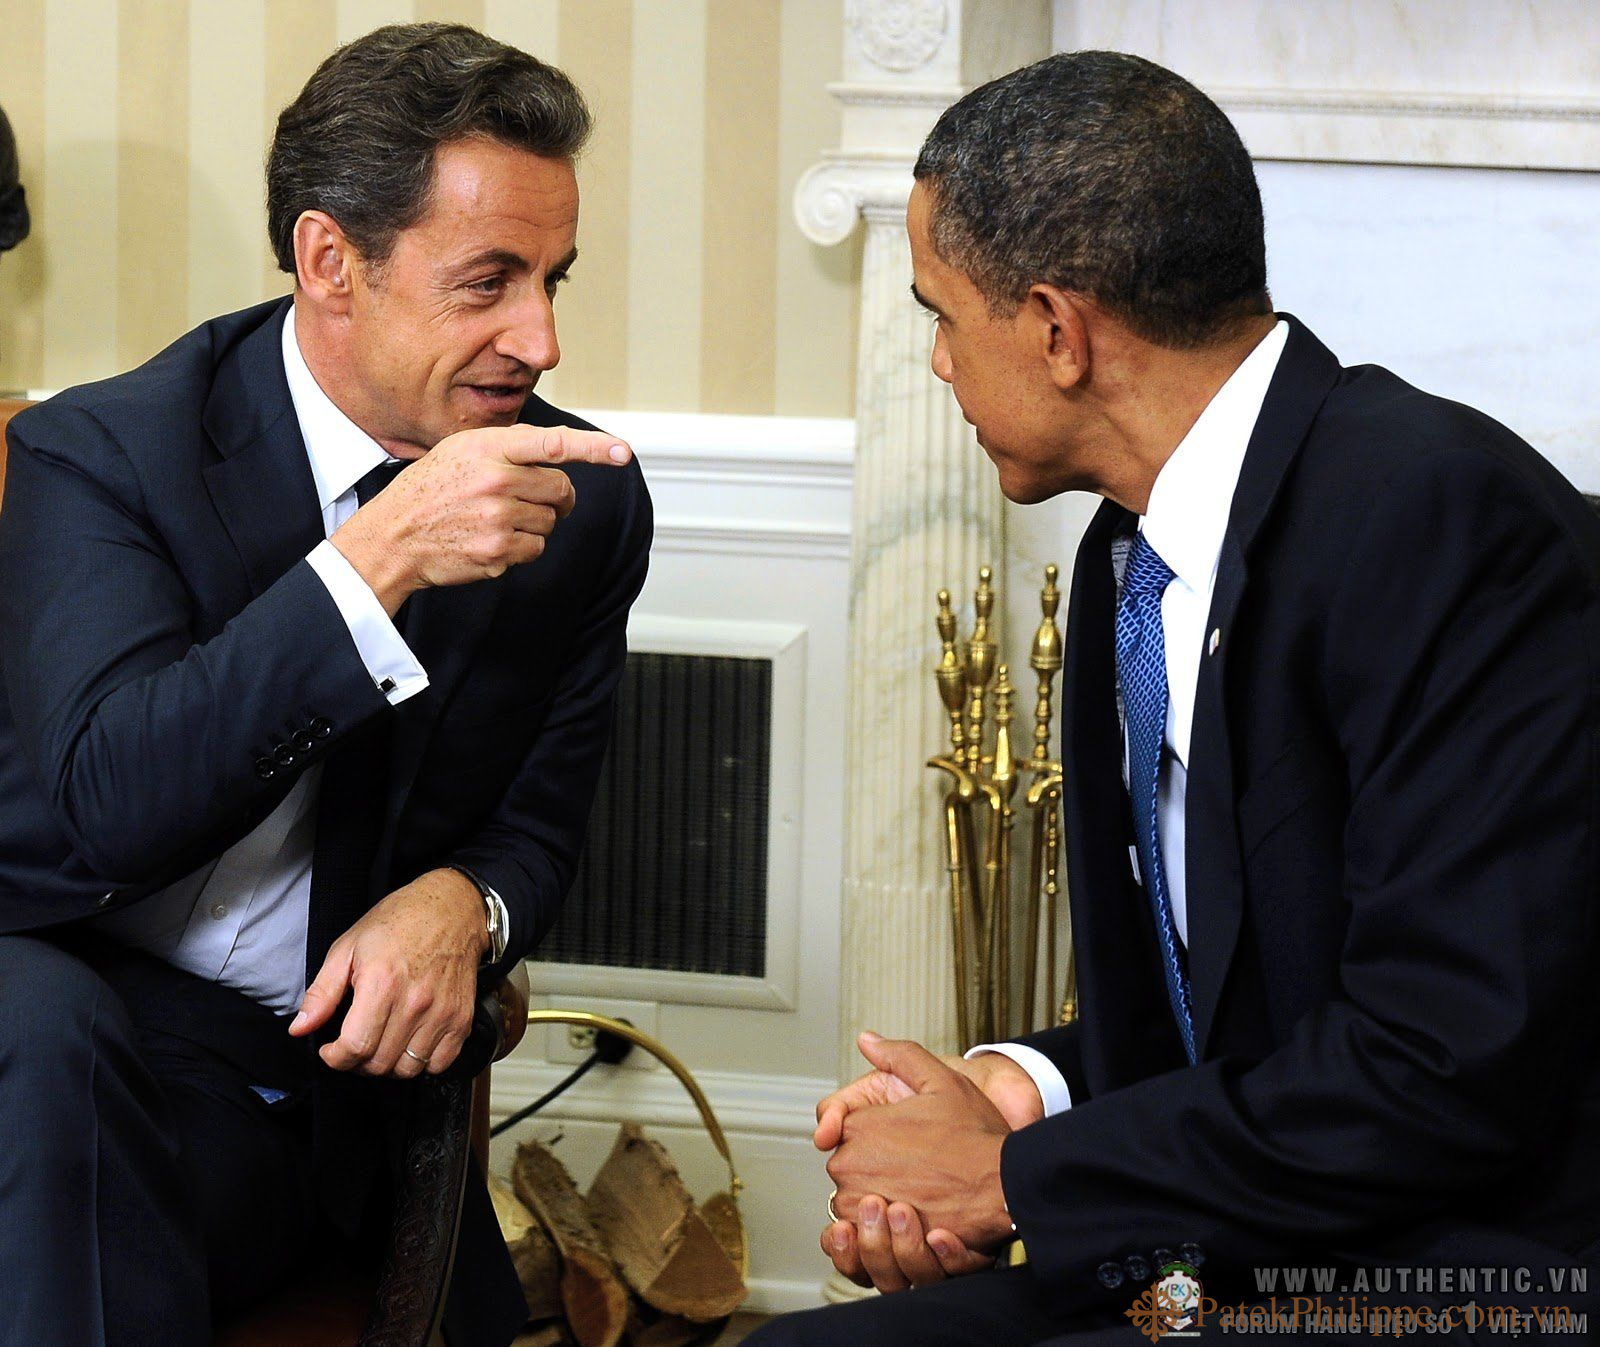 Obama-and-Nicolas-Sarkozy-in-Oval-Office-Patek-Philippe-3940.jpg